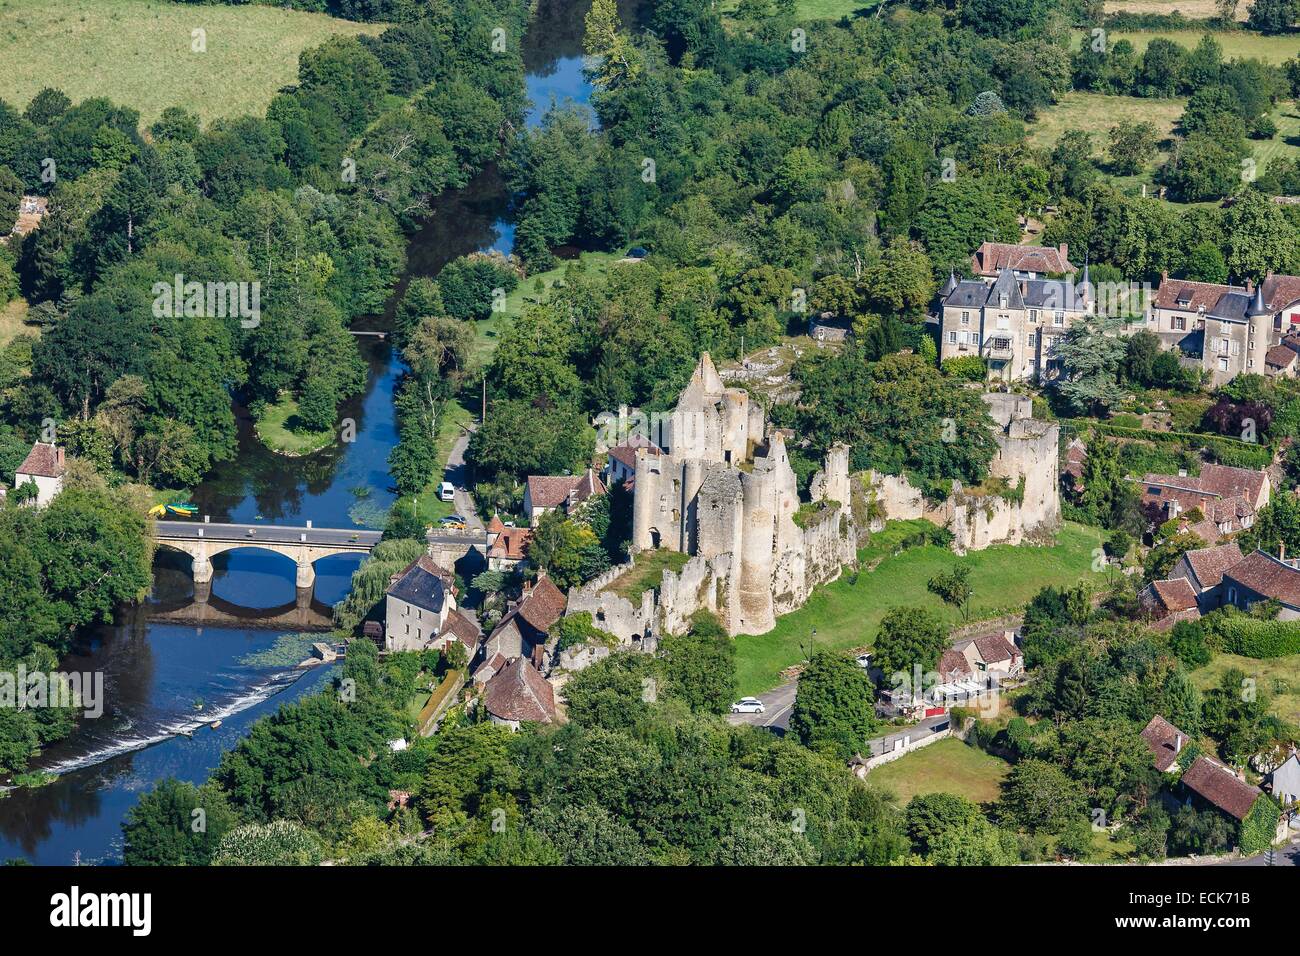 France, Vienne, Angles sur l'Anglin, labelled Les Plus Beaux Villages de France (The MoSaint Beautiful Villages of France), the castle and l'Anglin river (aerial view) Stock Photo